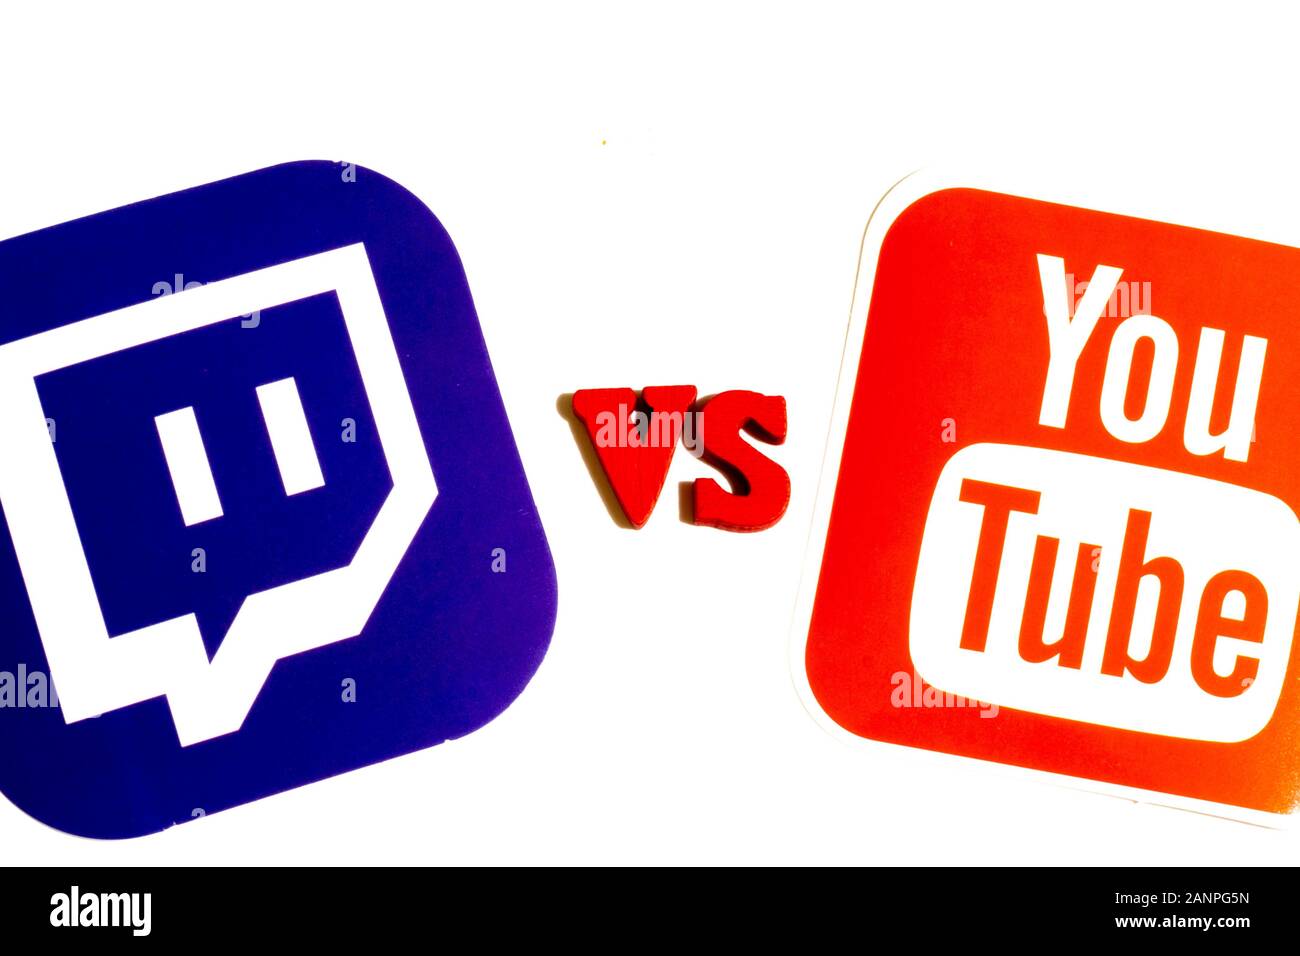 Los Angeles, Californie, États-Unis - 17 janvier 2020: Twitch vs YouTube streaming comparaison concept, éditorial illustratif Banque D'Images